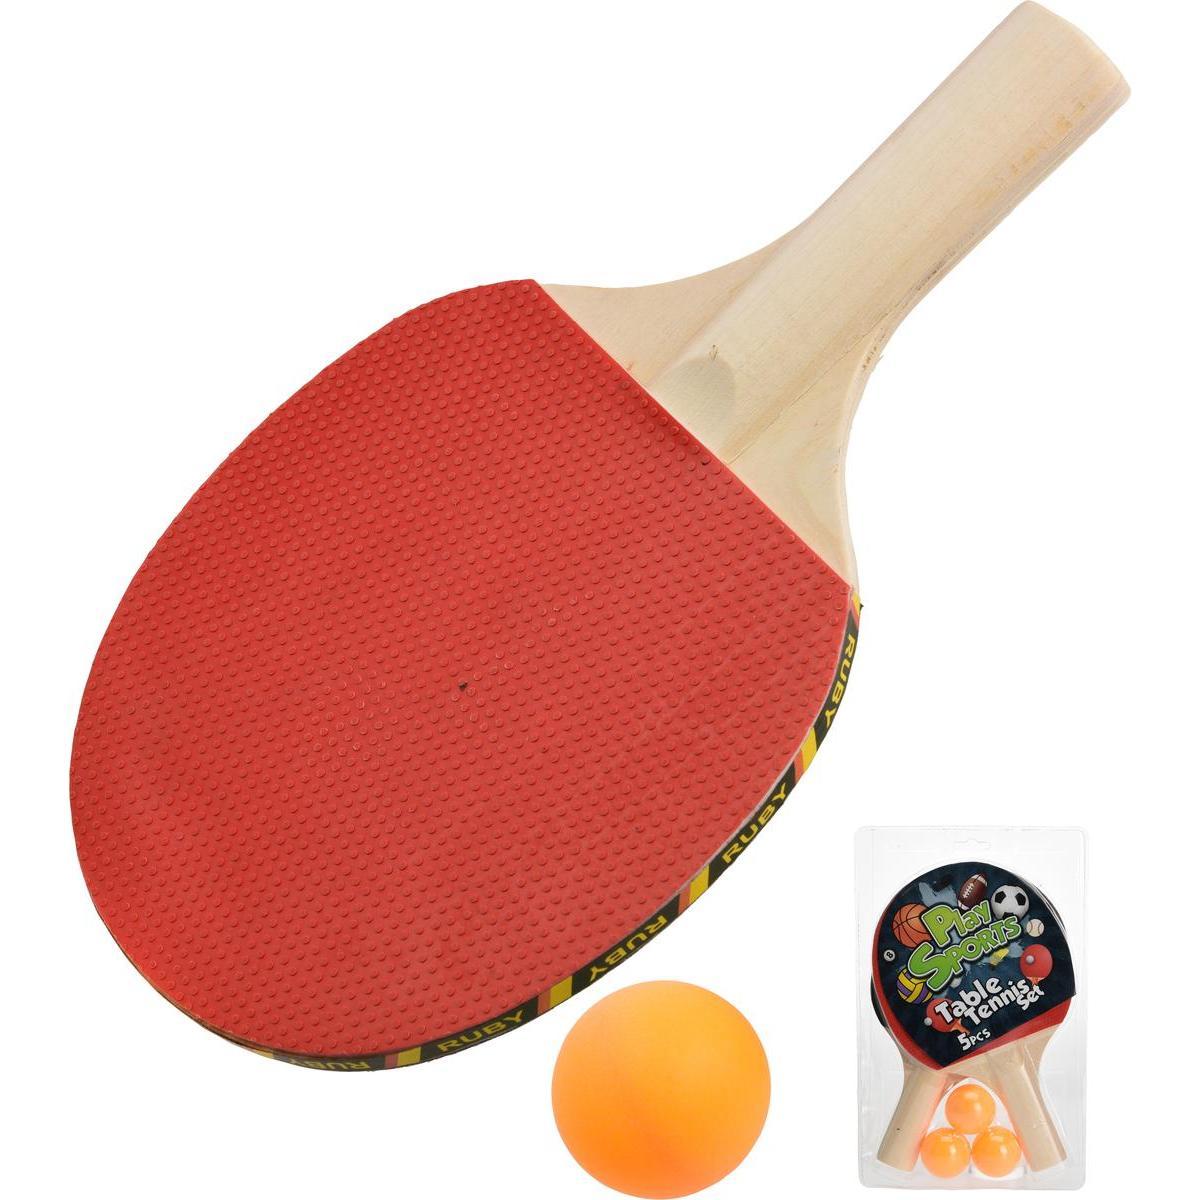 Set de Tennis de table - 2 raquettes + 3 balles - ø 4 cm - Multicolore